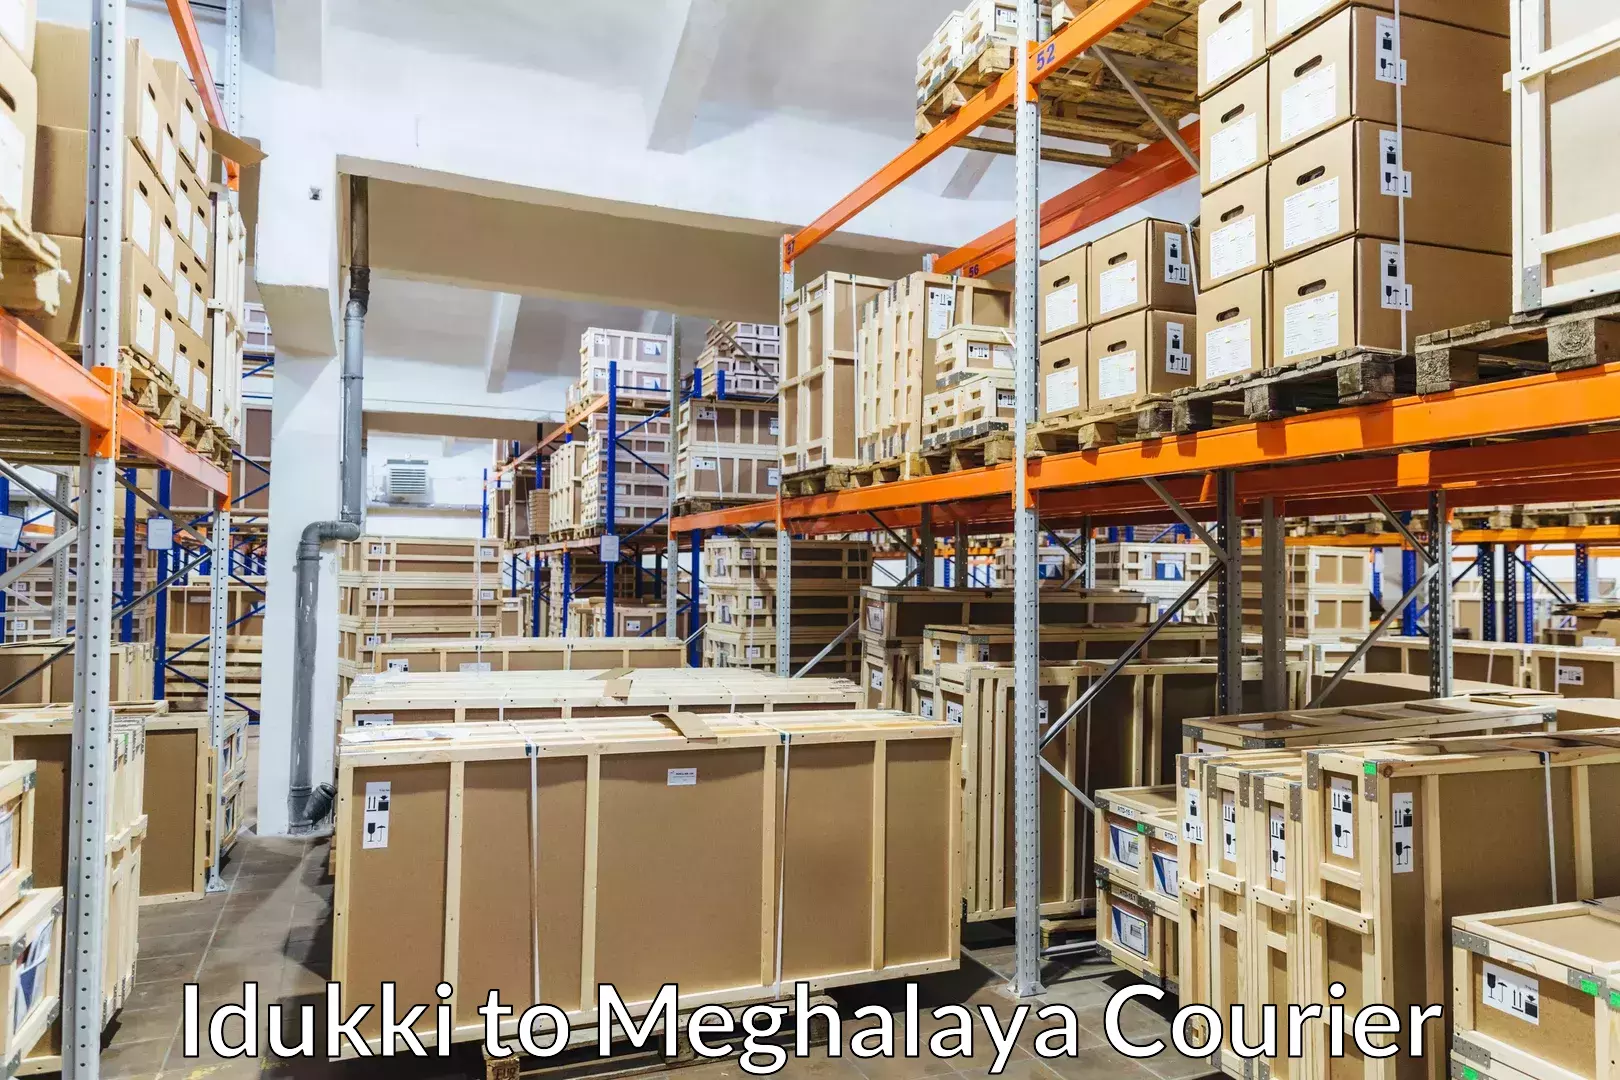 Luggage shipment specialists Idukki to Meghalaya